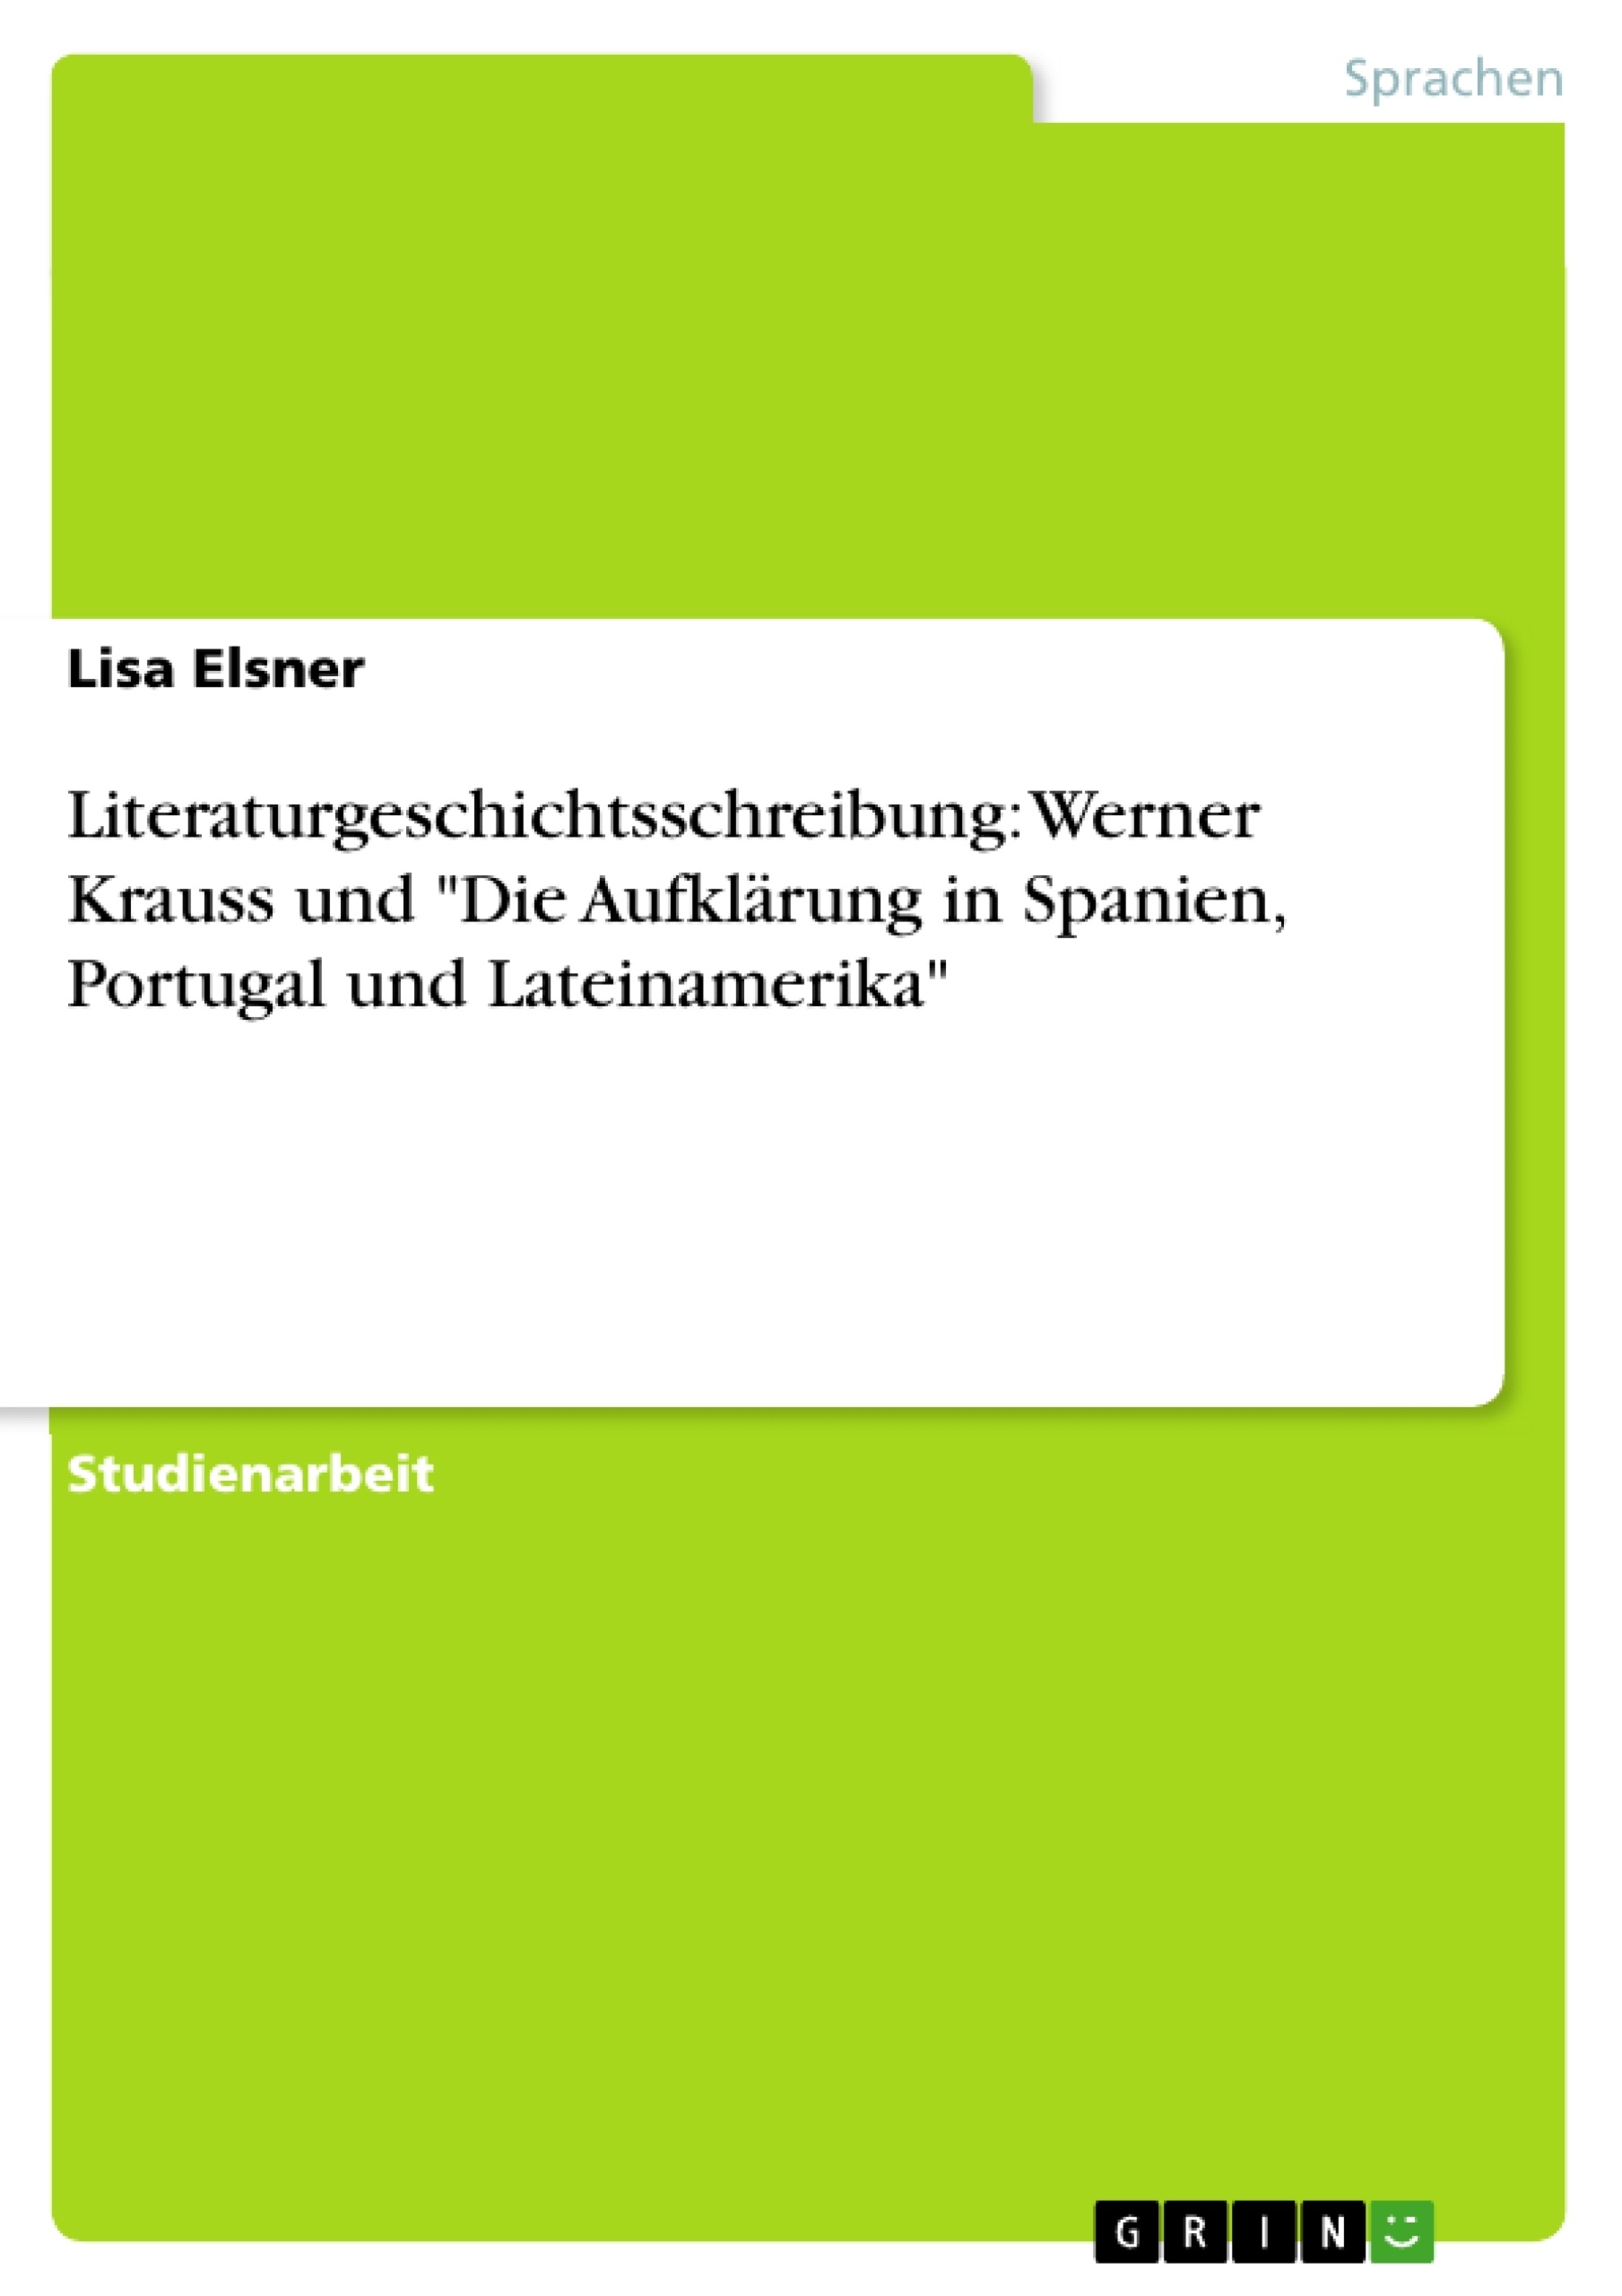 Titel: Literaturgeschichtsschreibung: Werner Krauss und "Die Aufklärung in Spanien, Portugal und Lateinamerika"